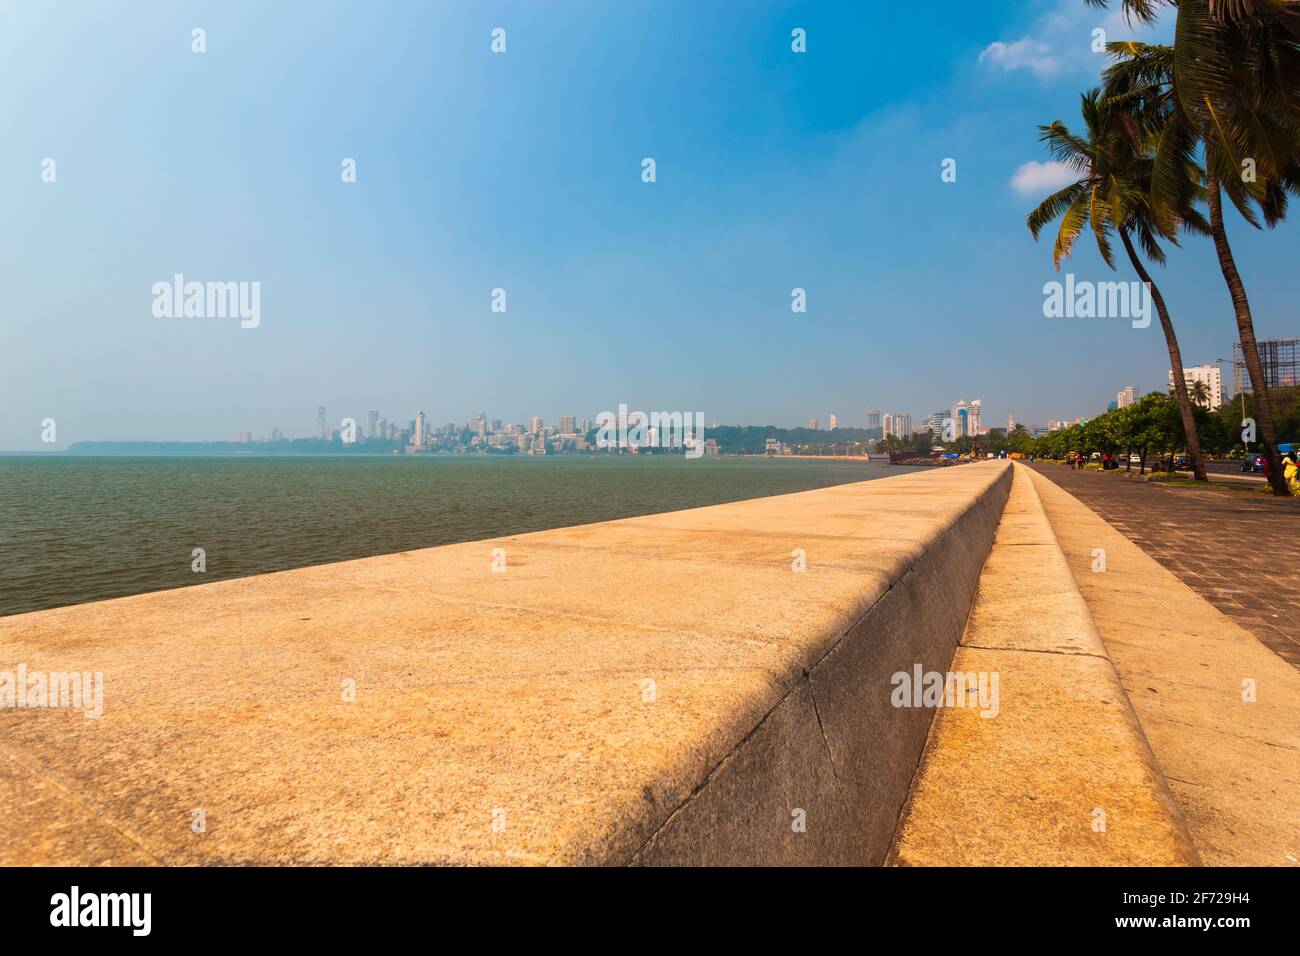 Malerischer, breiter, ruhiger, friedlicher Blick am Morgen auf Mumbai's Marine Drive/Nariman Point, am arabischen Meer, offener blauer Himmel. Stockfoto